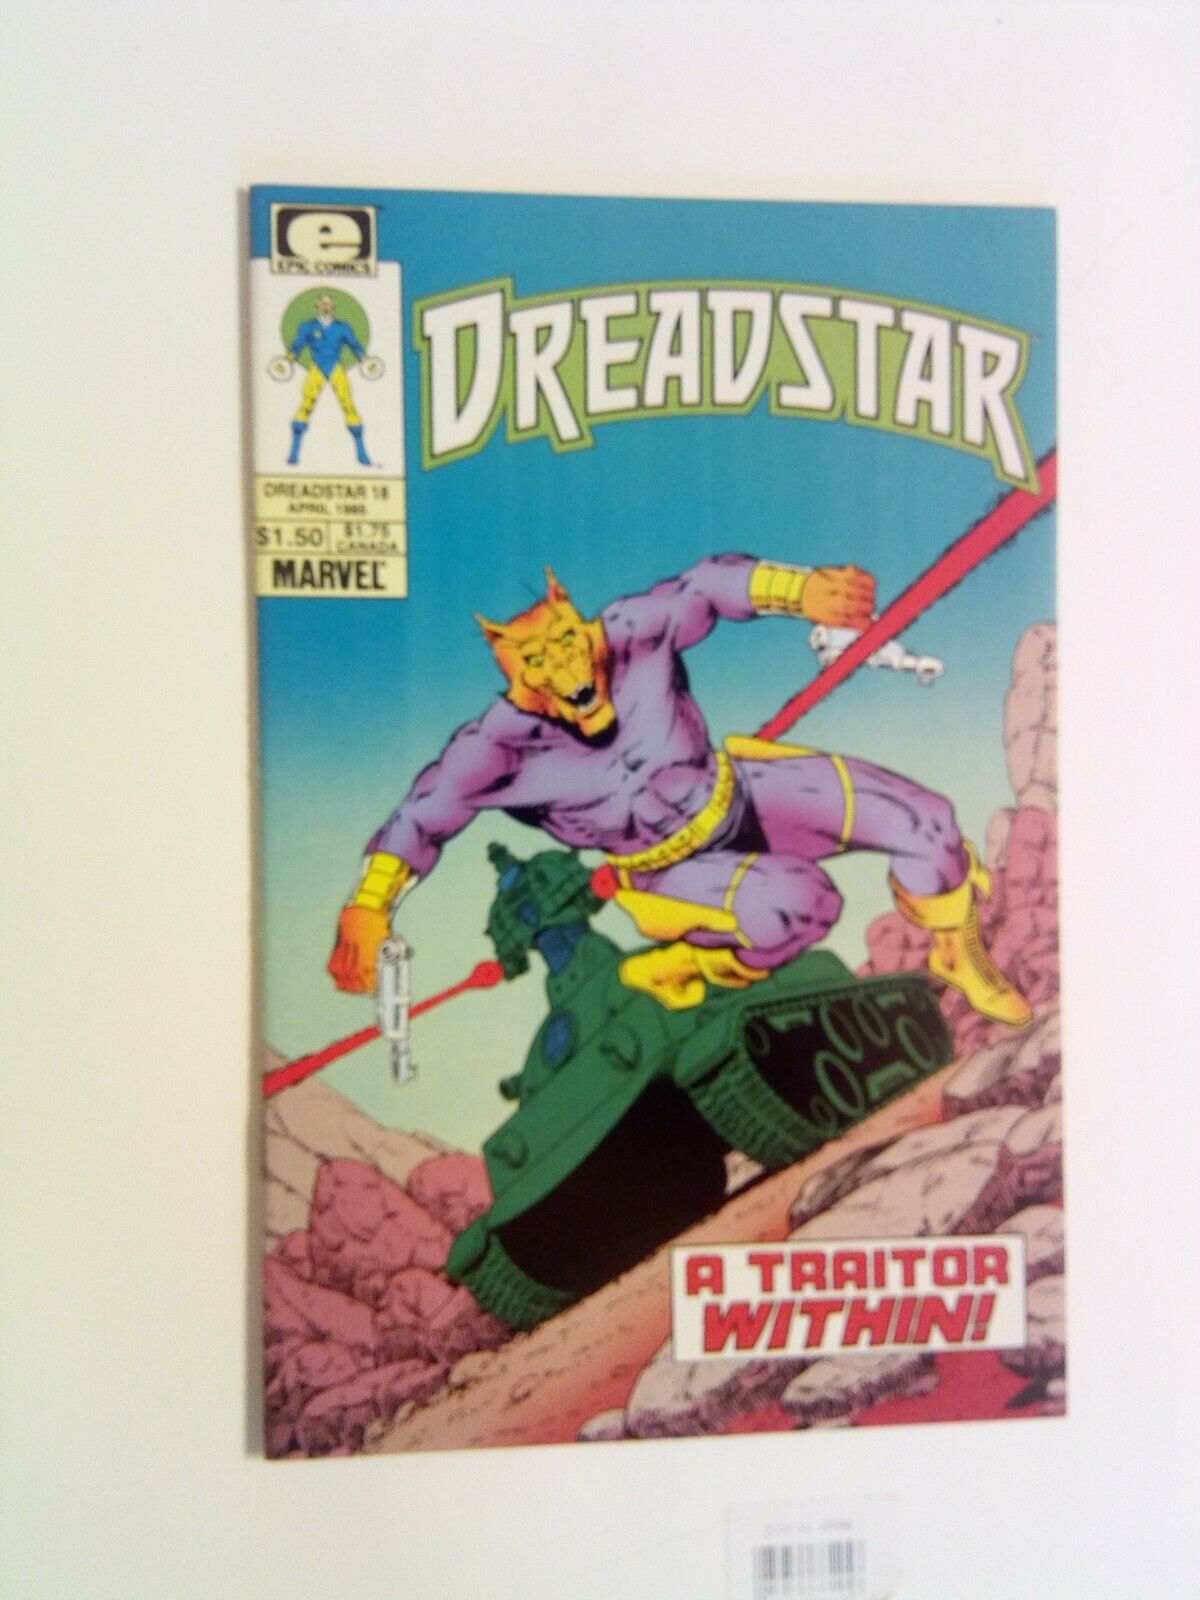 Dreadstar v1 #18 Marvel/Epic 1985 NM Oedi cover Jim Starlin SciFi